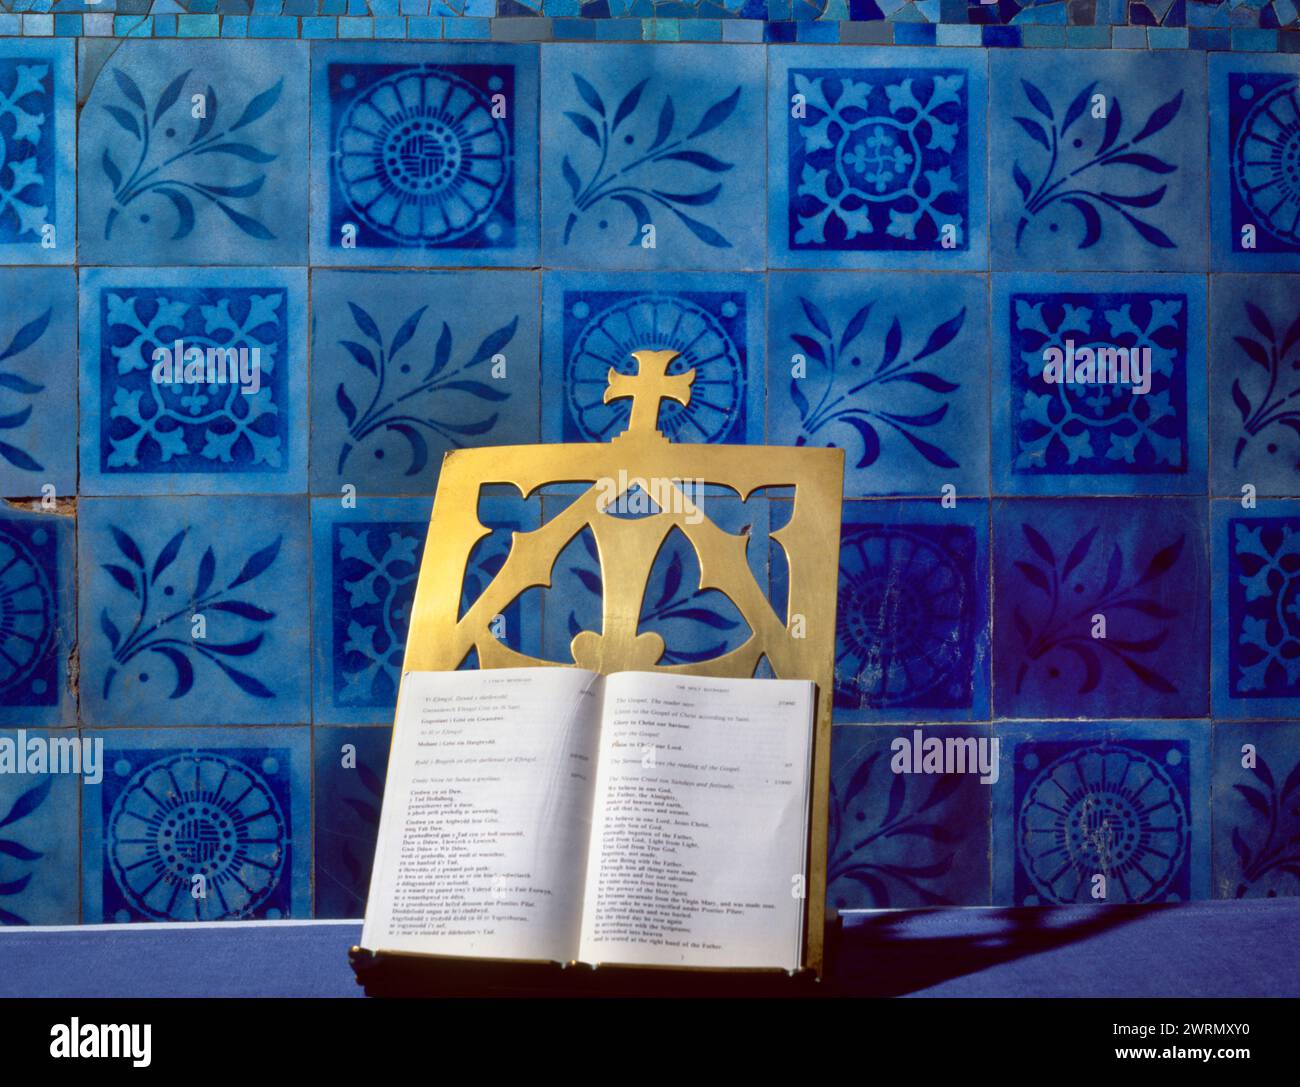 Tuiles de verre bleu d'inspiration victorienne et islamique, et un stand de livres en laiton, dans le Sanctuaire de l'église St Patrick, Llanbadrig, Anglesey, pays de Galles, Royaume-Uni. Banque D'Images